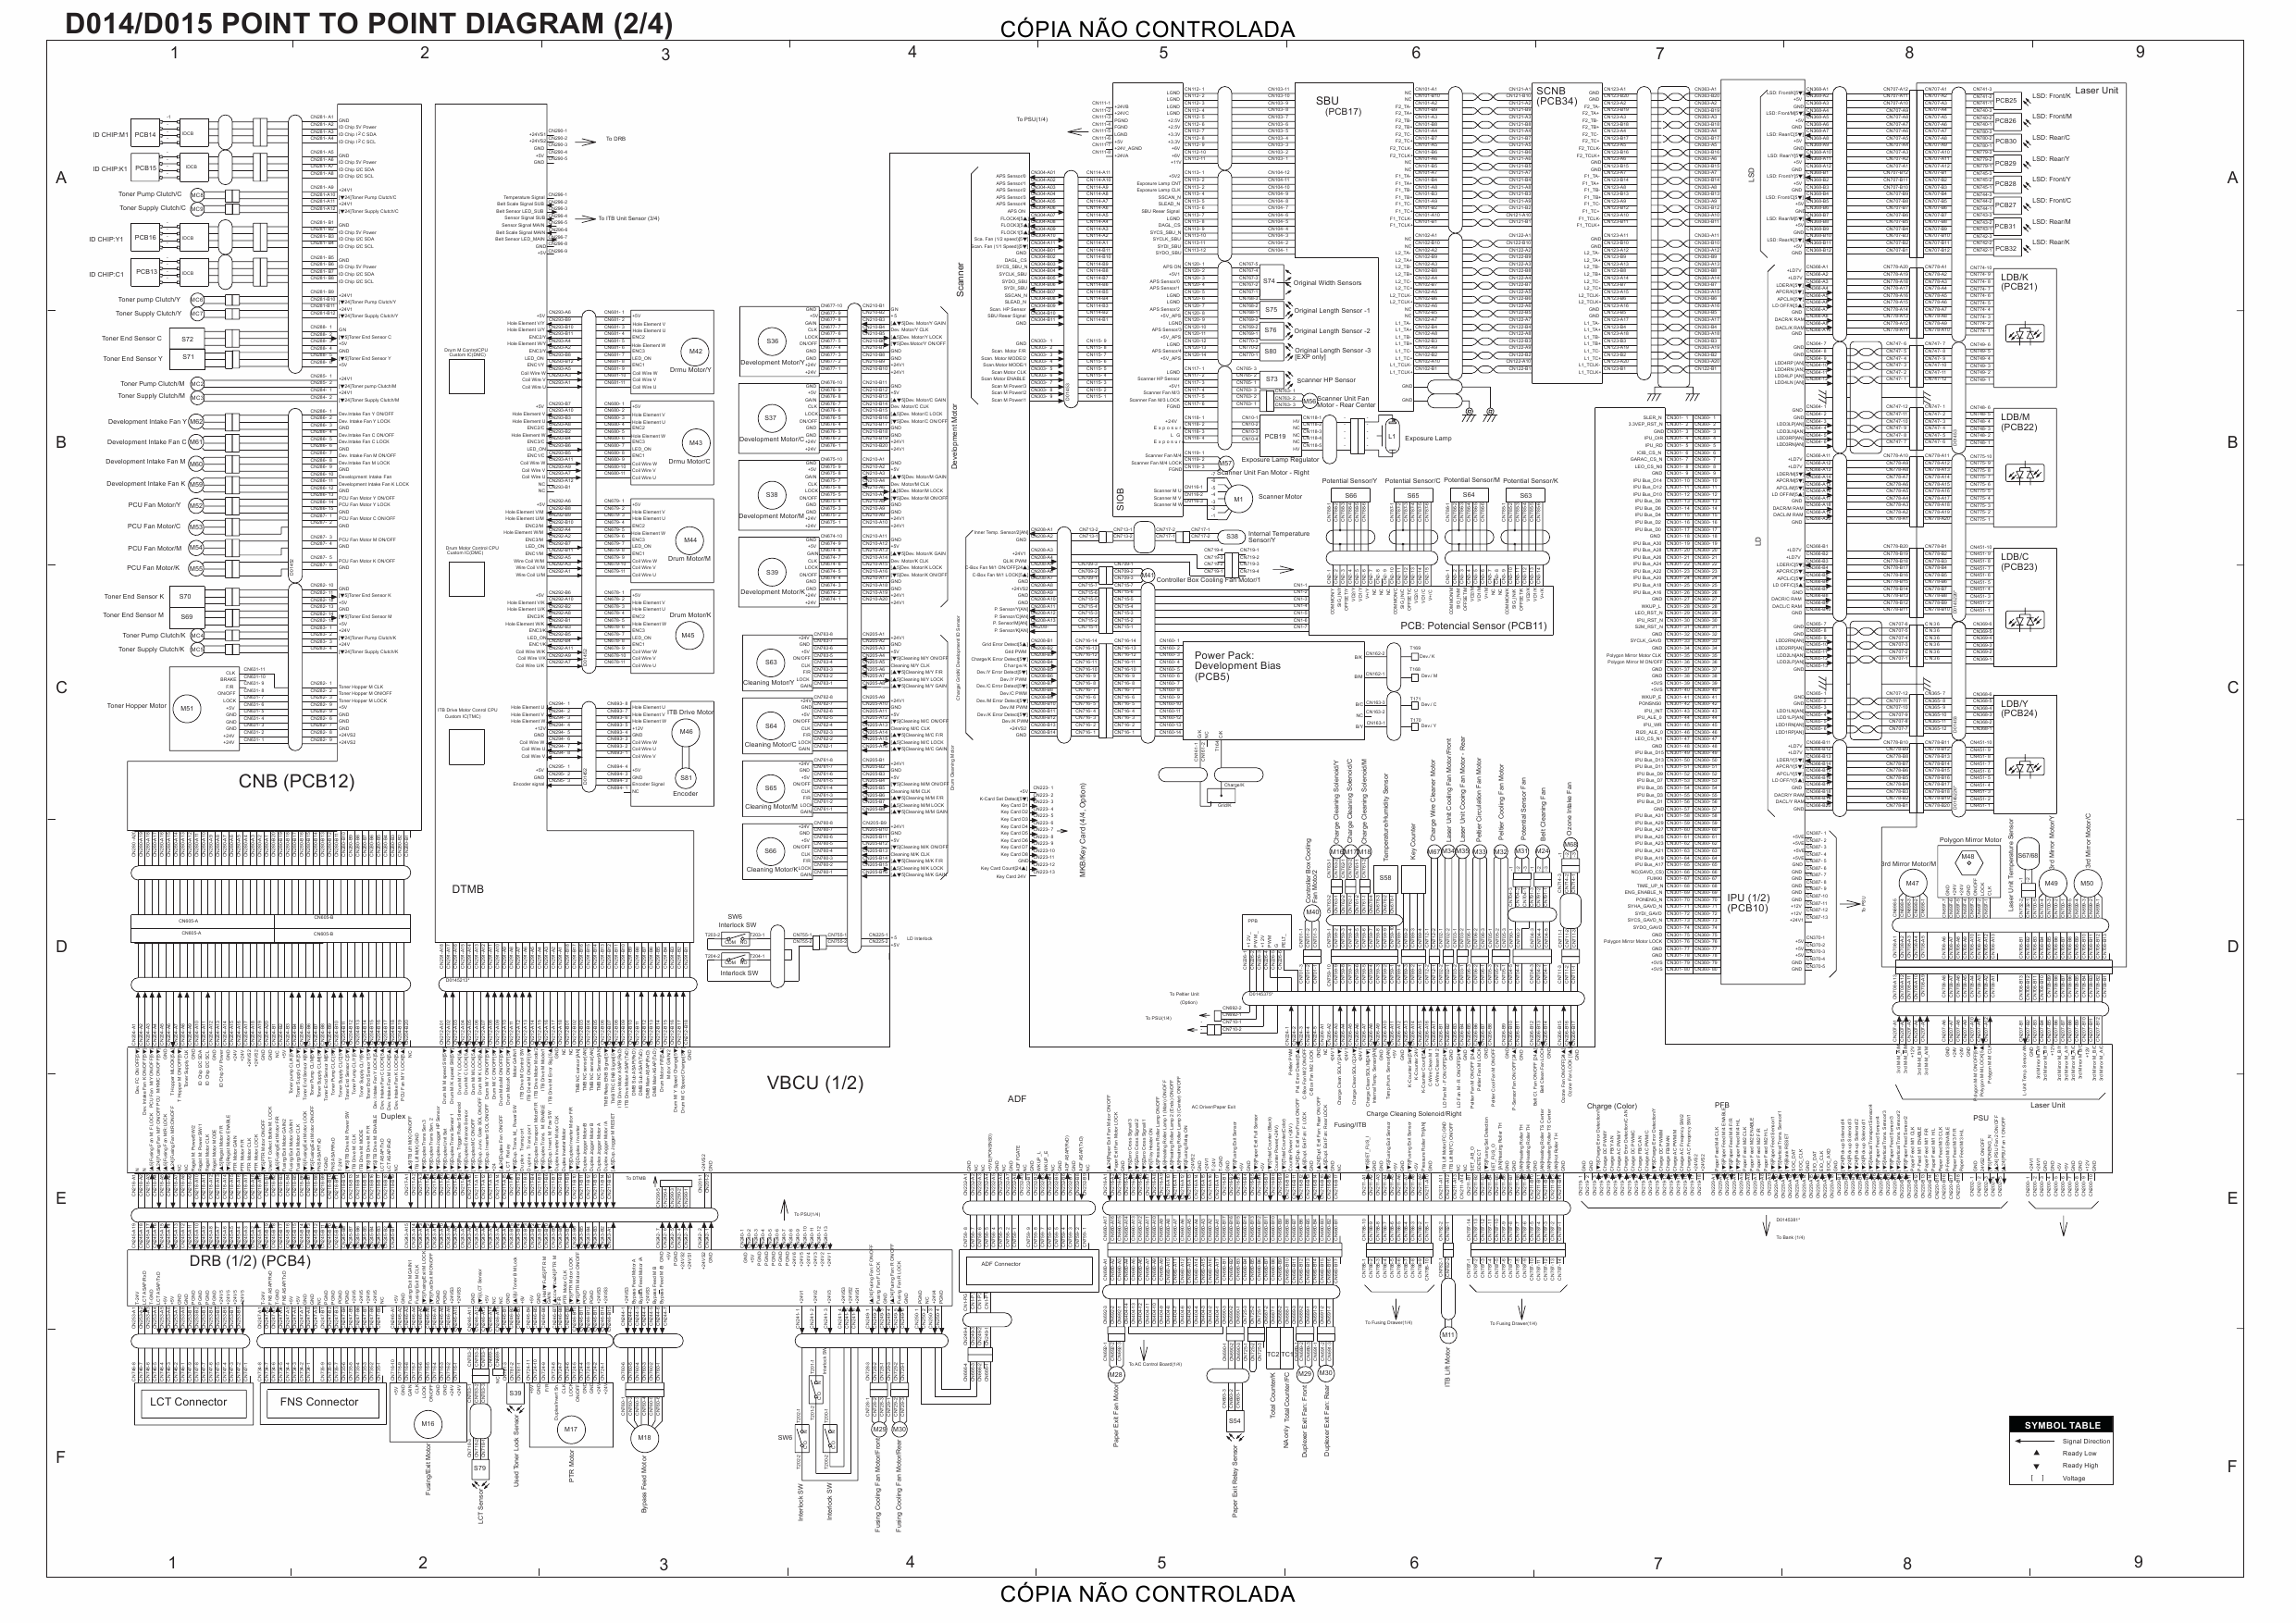 RICOH Aficio MP-C6000 C7500 Pro-C550EX C700EX D014 D015 D078 D079 Circuit Diagram-2